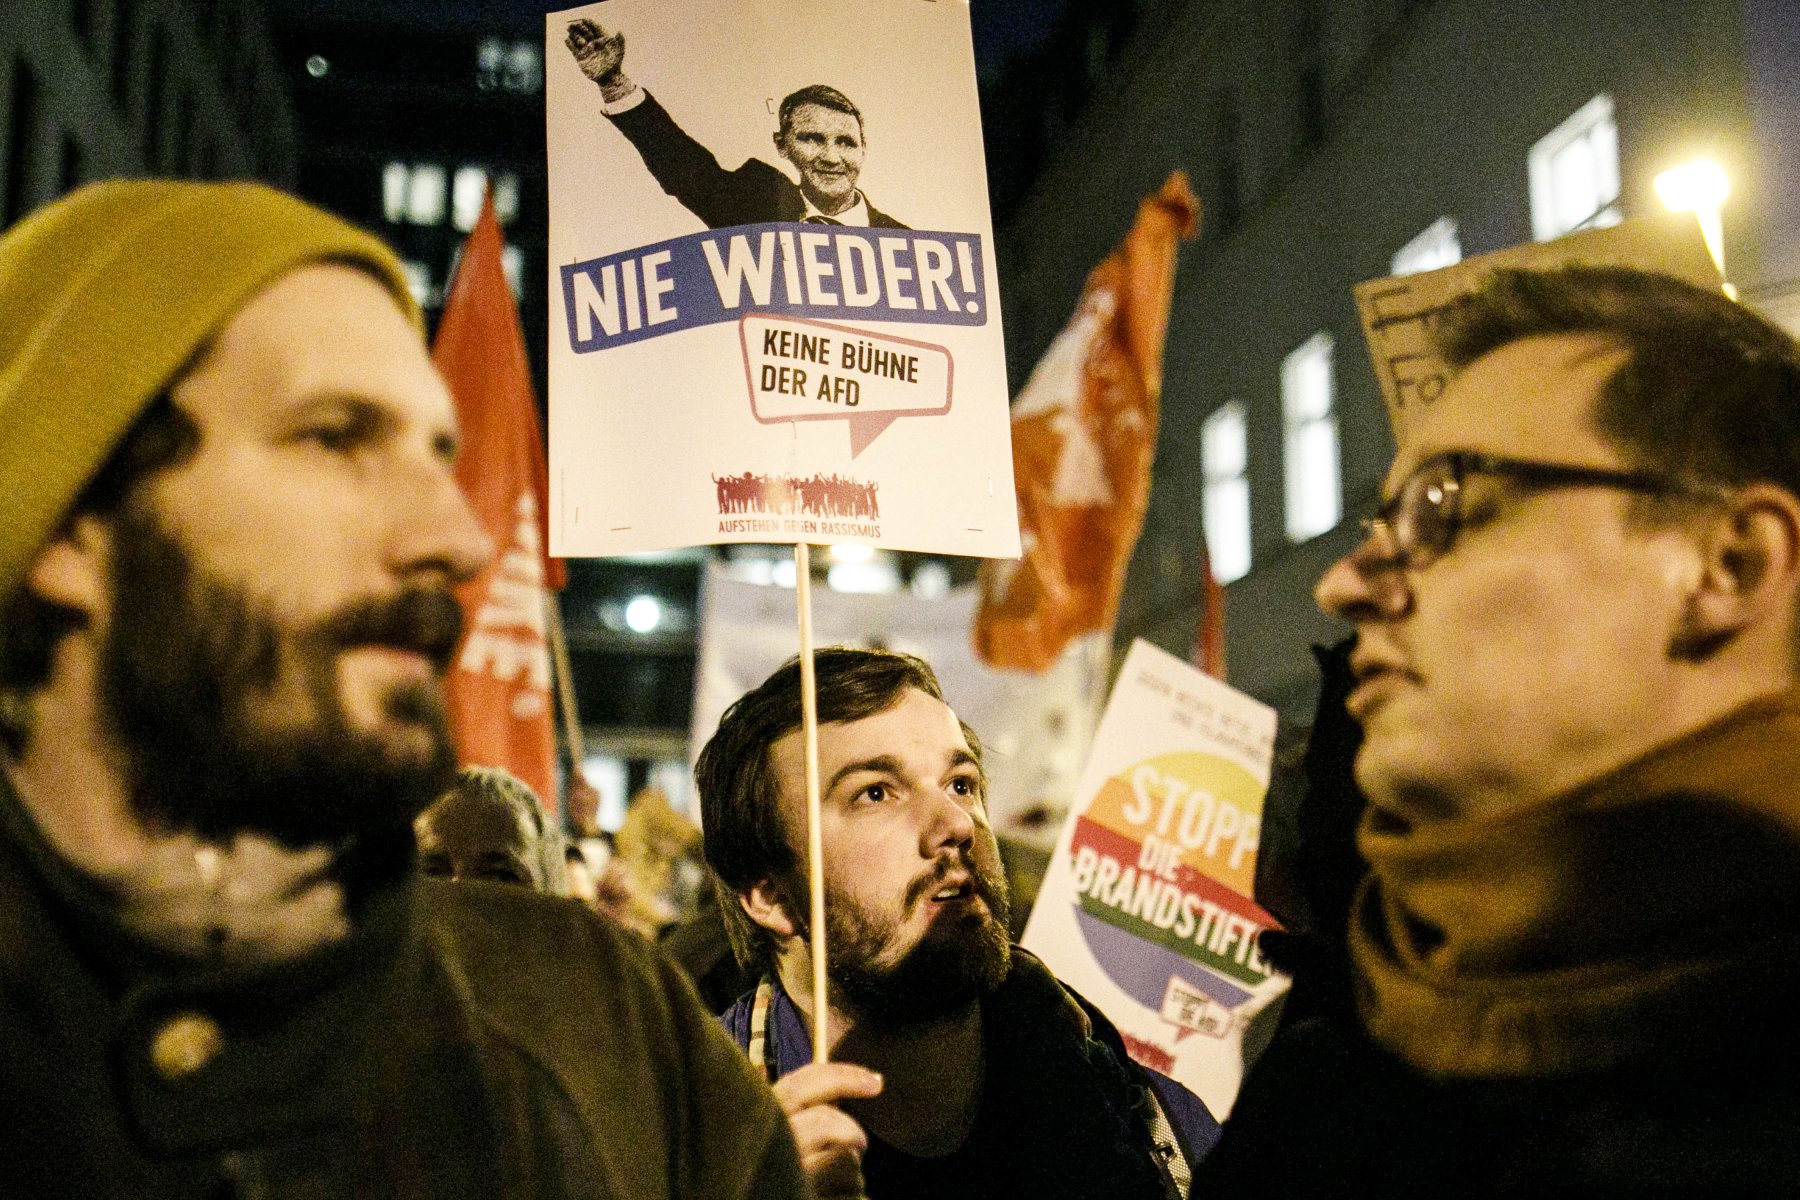 Mehr als 1.000 Menschen protestierten am Mittwochabend vor der Berliner FDP-Zentrale.